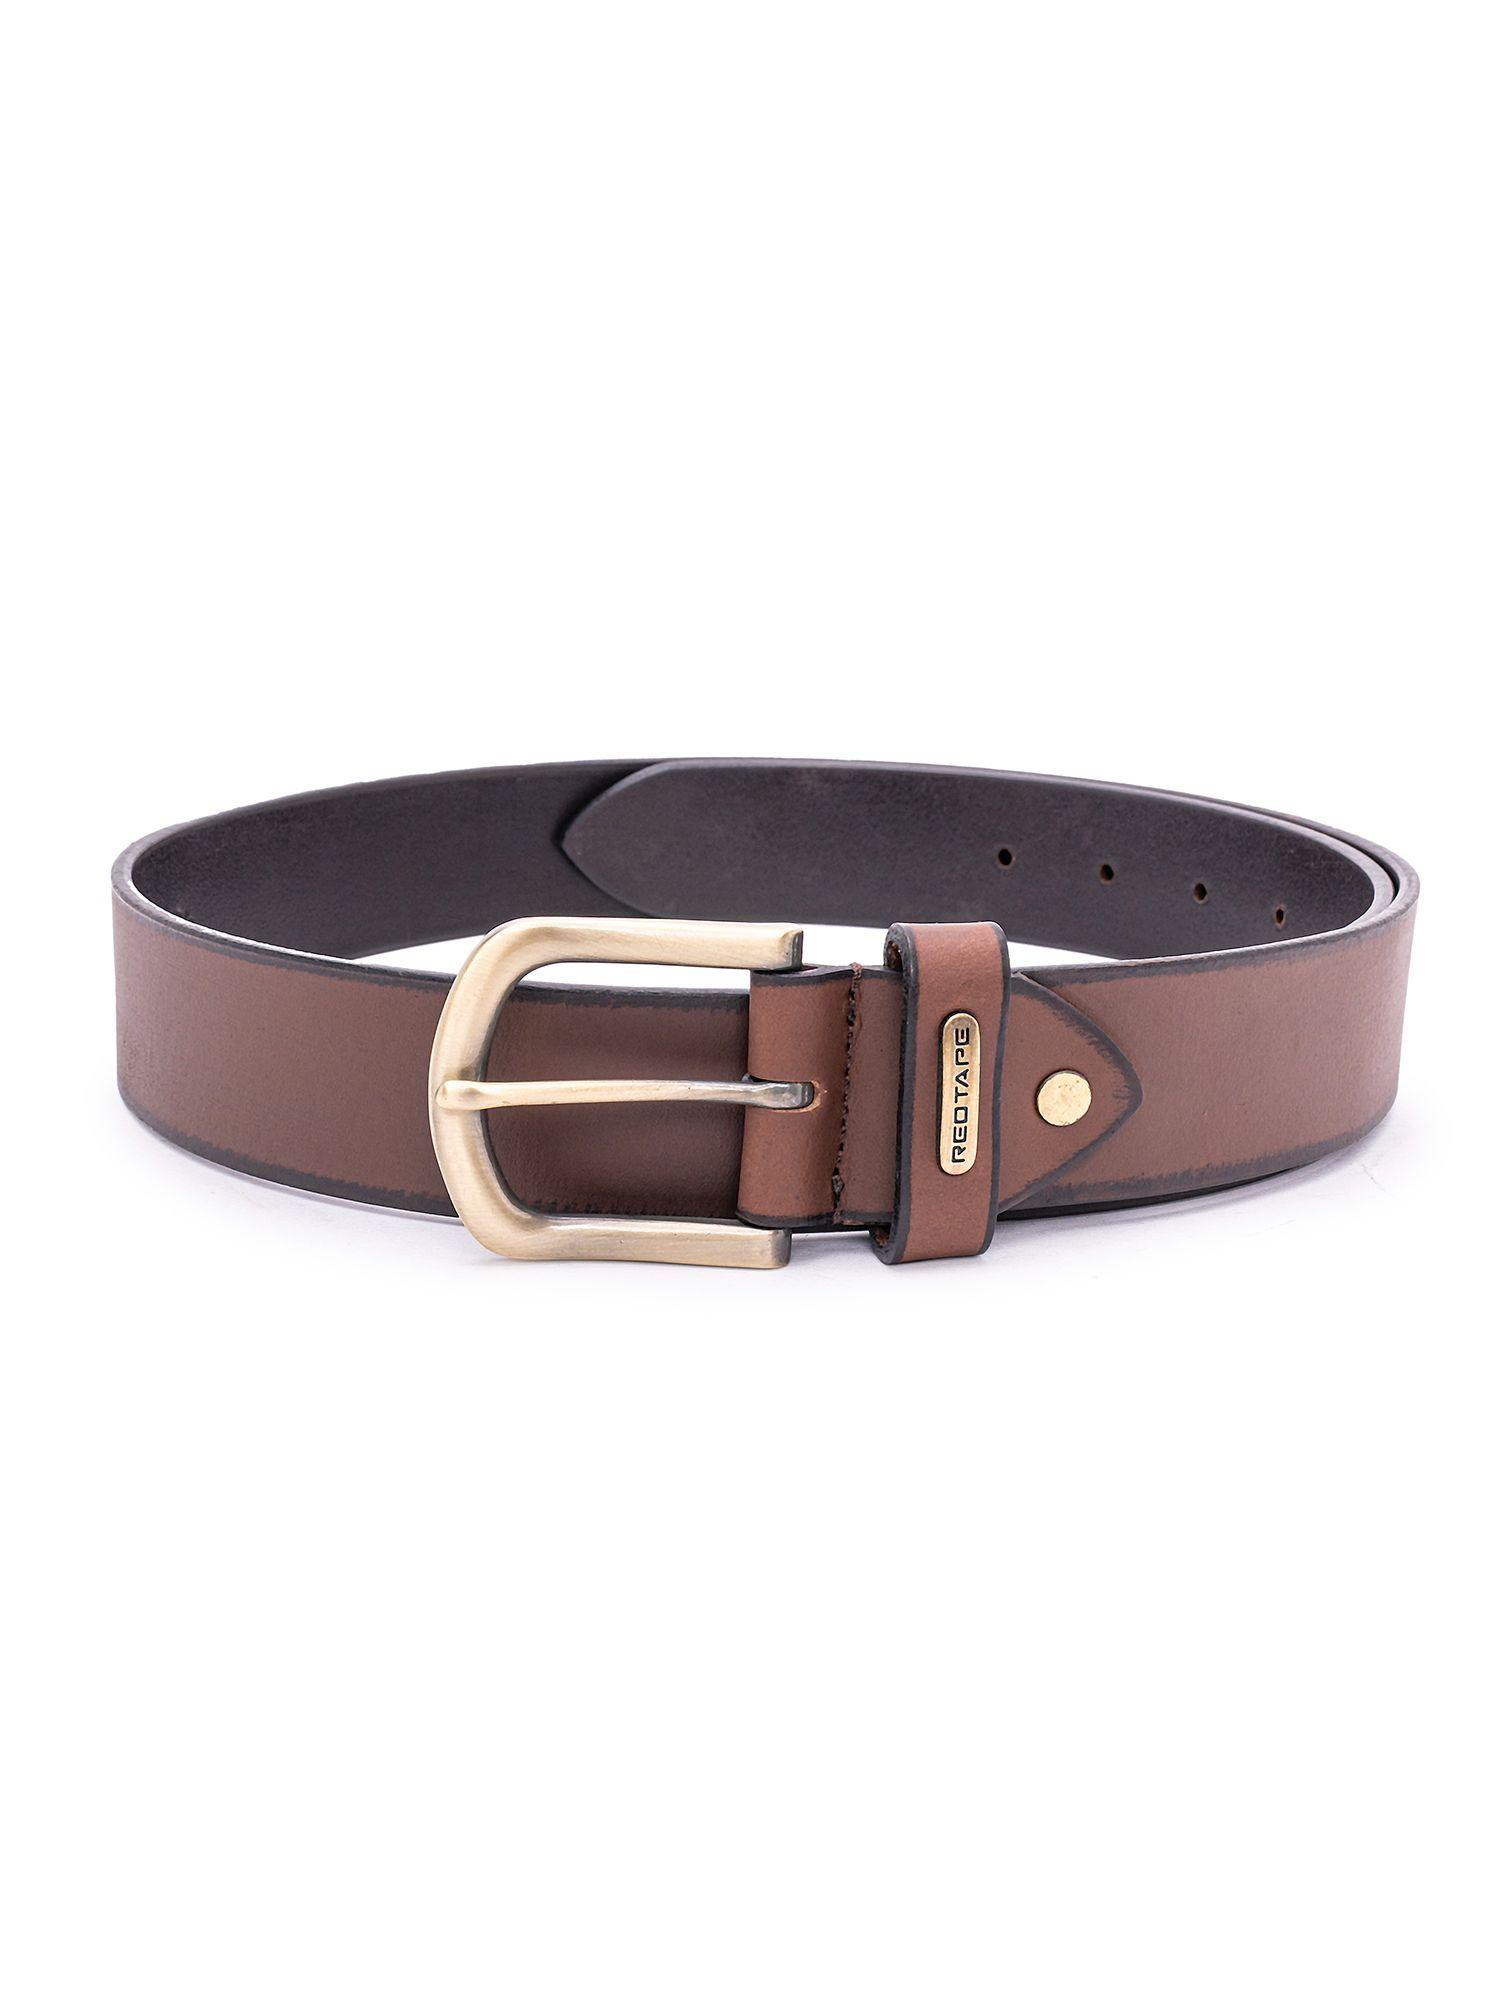 mens brown leather formal belt